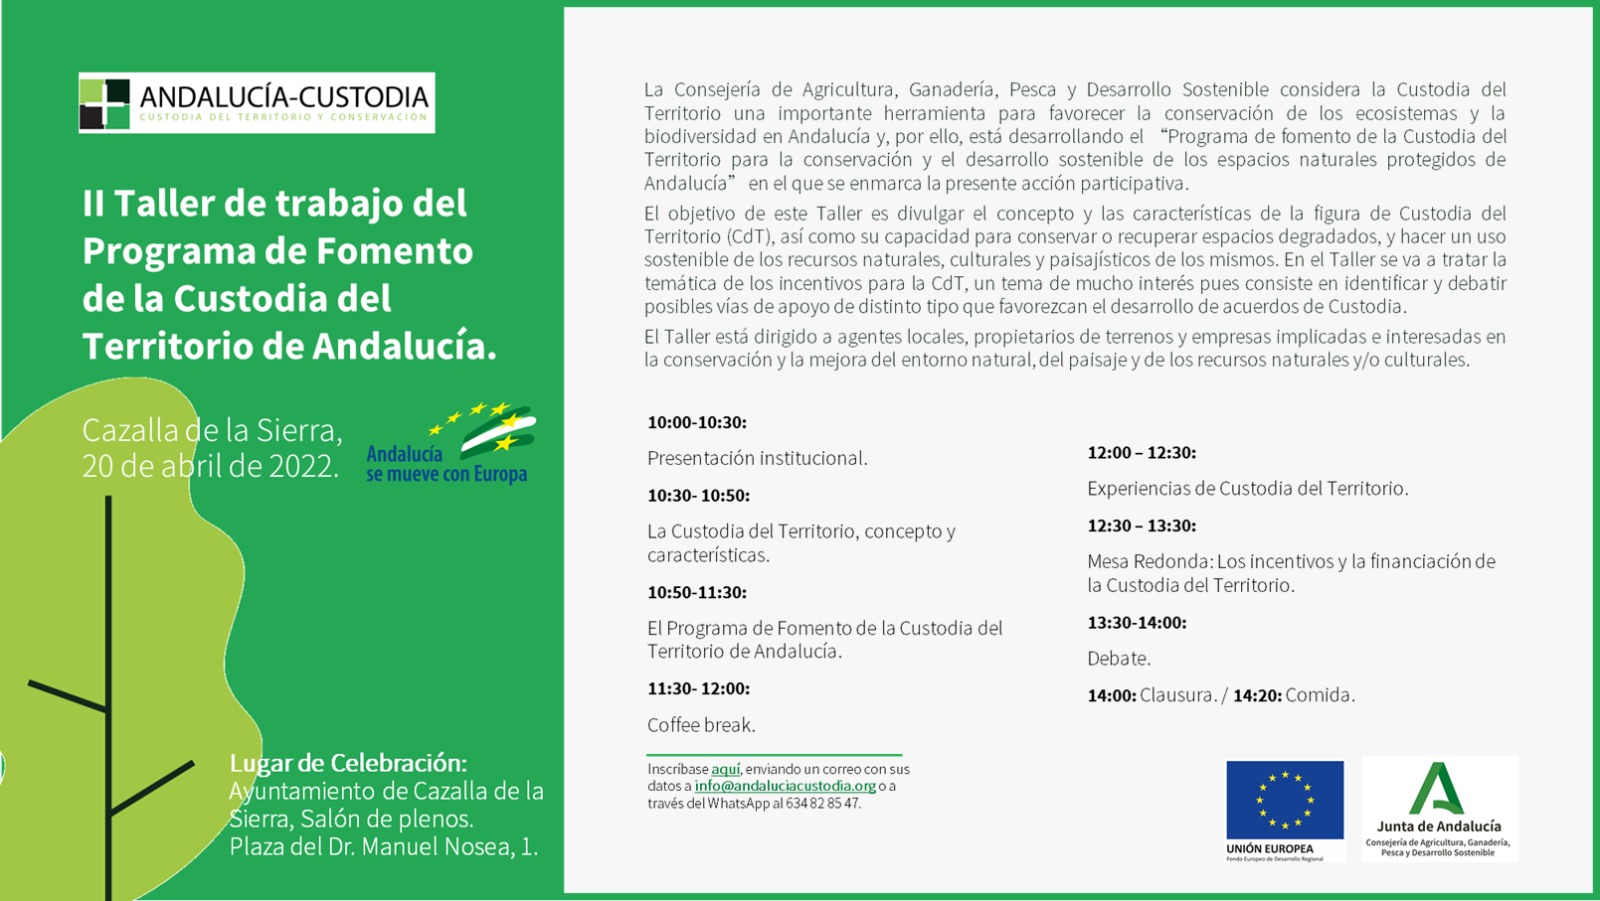 El 20 de abril II Taller de Trabajo del Programa de Fomento de la Custodia de Andalucía